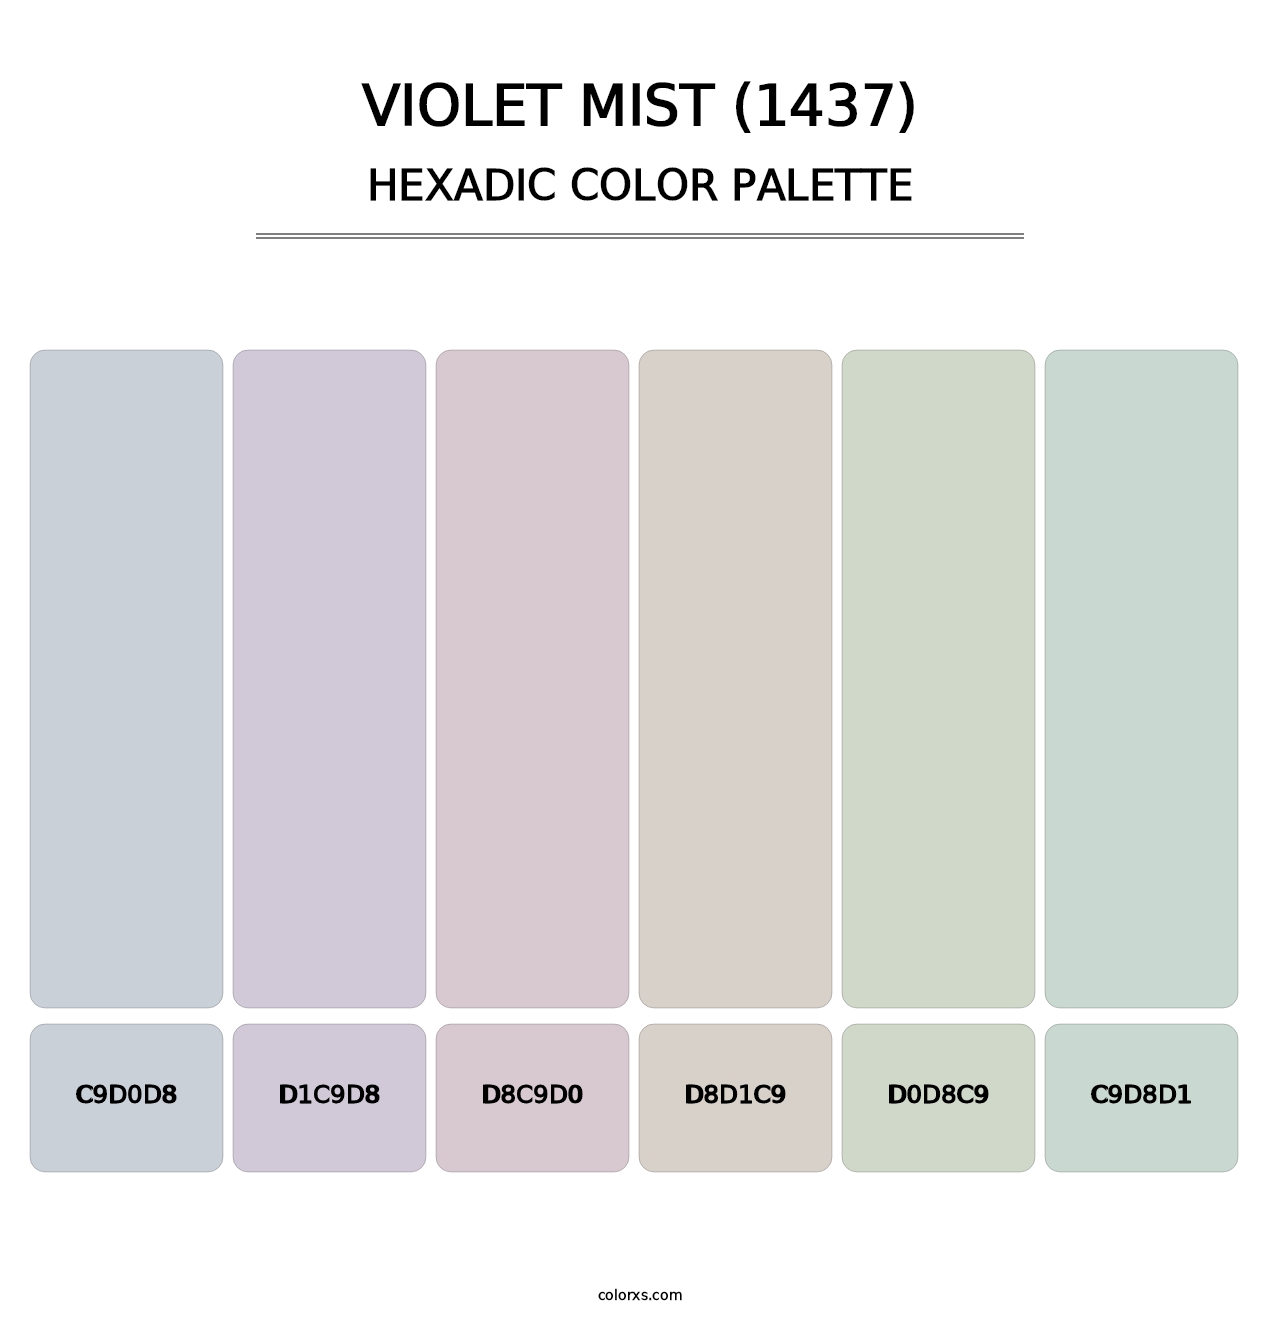 Violet Mist (1437) - Hexadic Color Palette